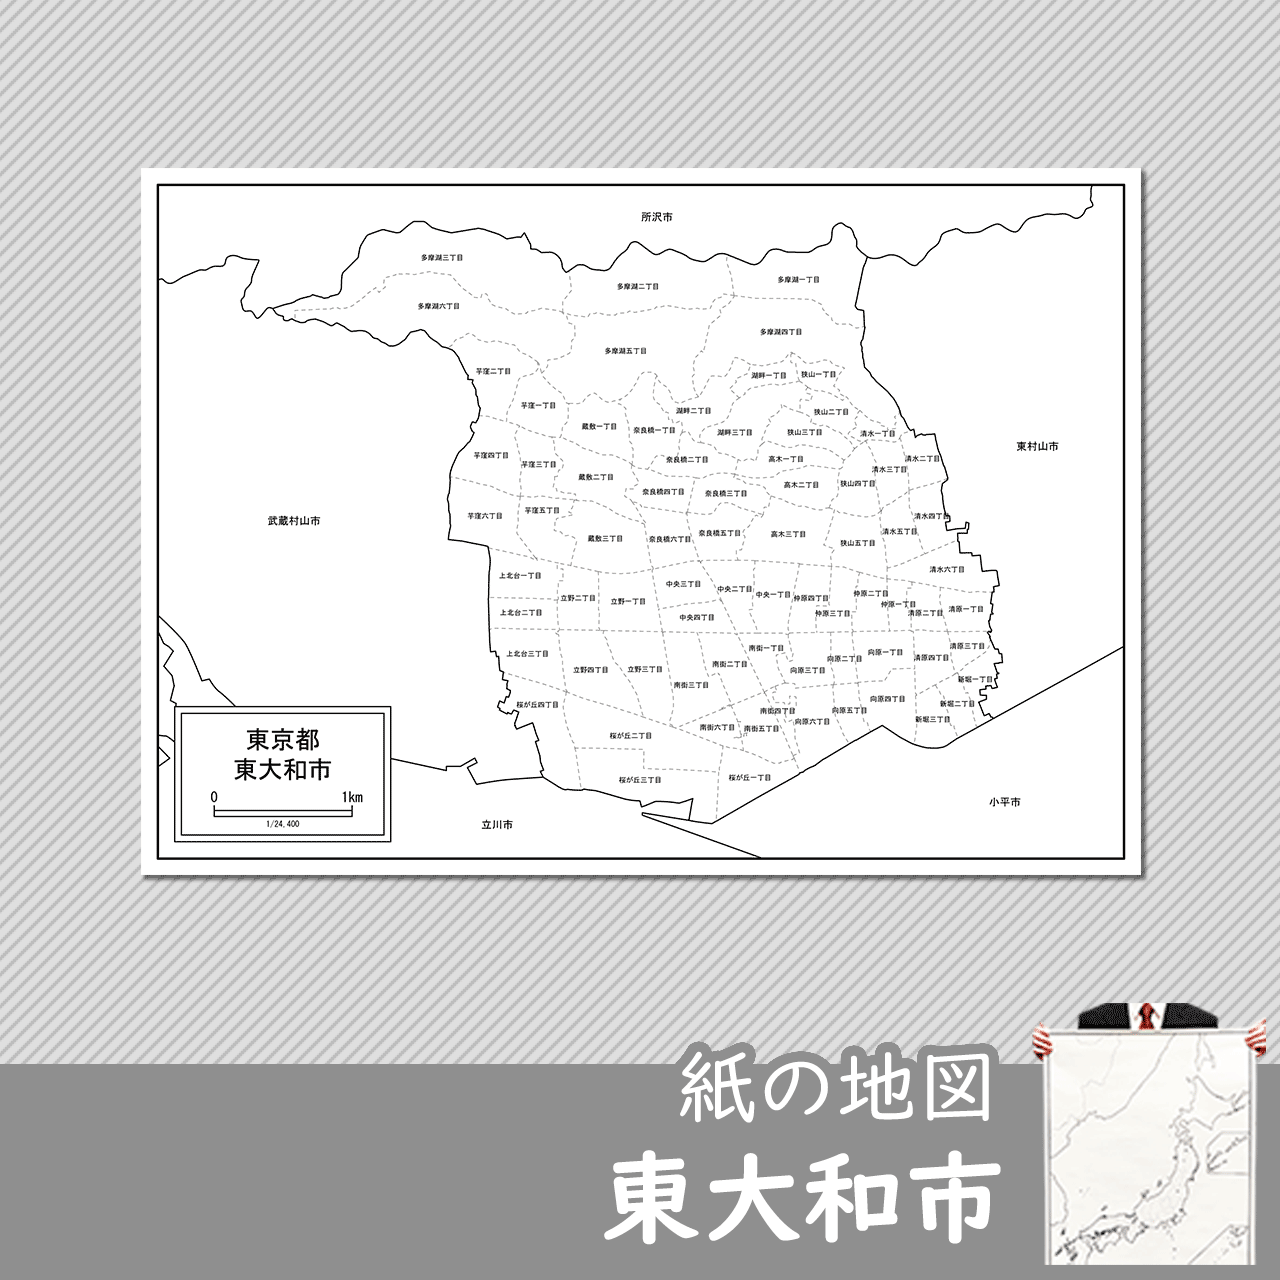 東大和市の紙の白地図のサムネイル